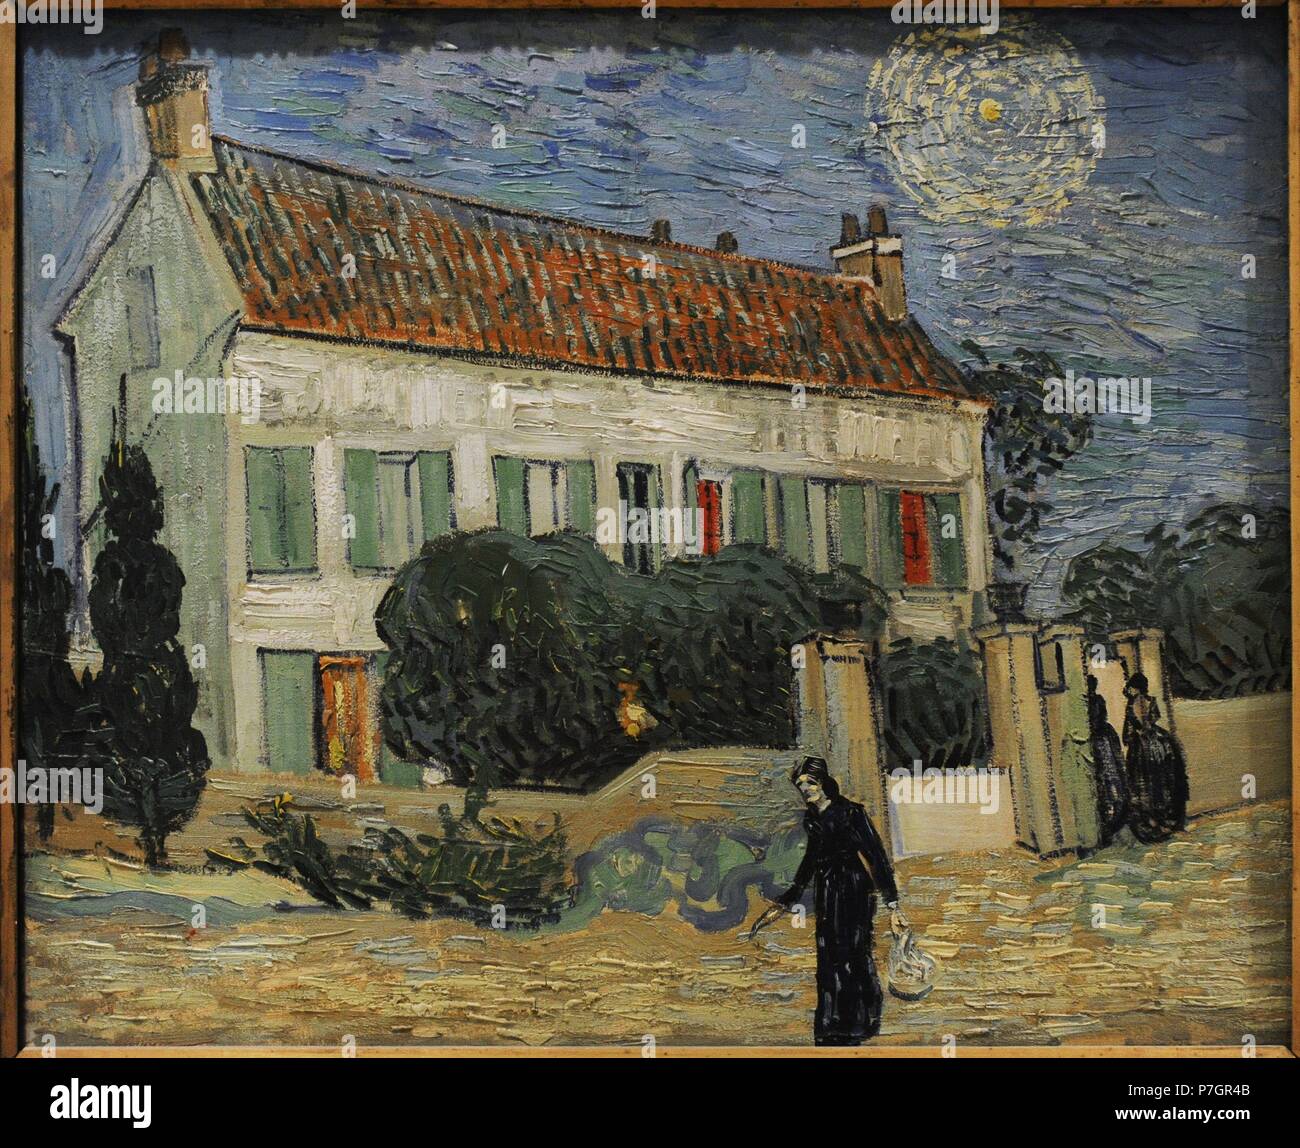 Vincent Van Gogh (1853-1890). Niederländische Post-Impressionisten Maler. Das weiße Haus bei Nacht, 1890. Öl auf Leinwand. Die Eremitage. Sankt Petersburg. Russland. Stockfoto